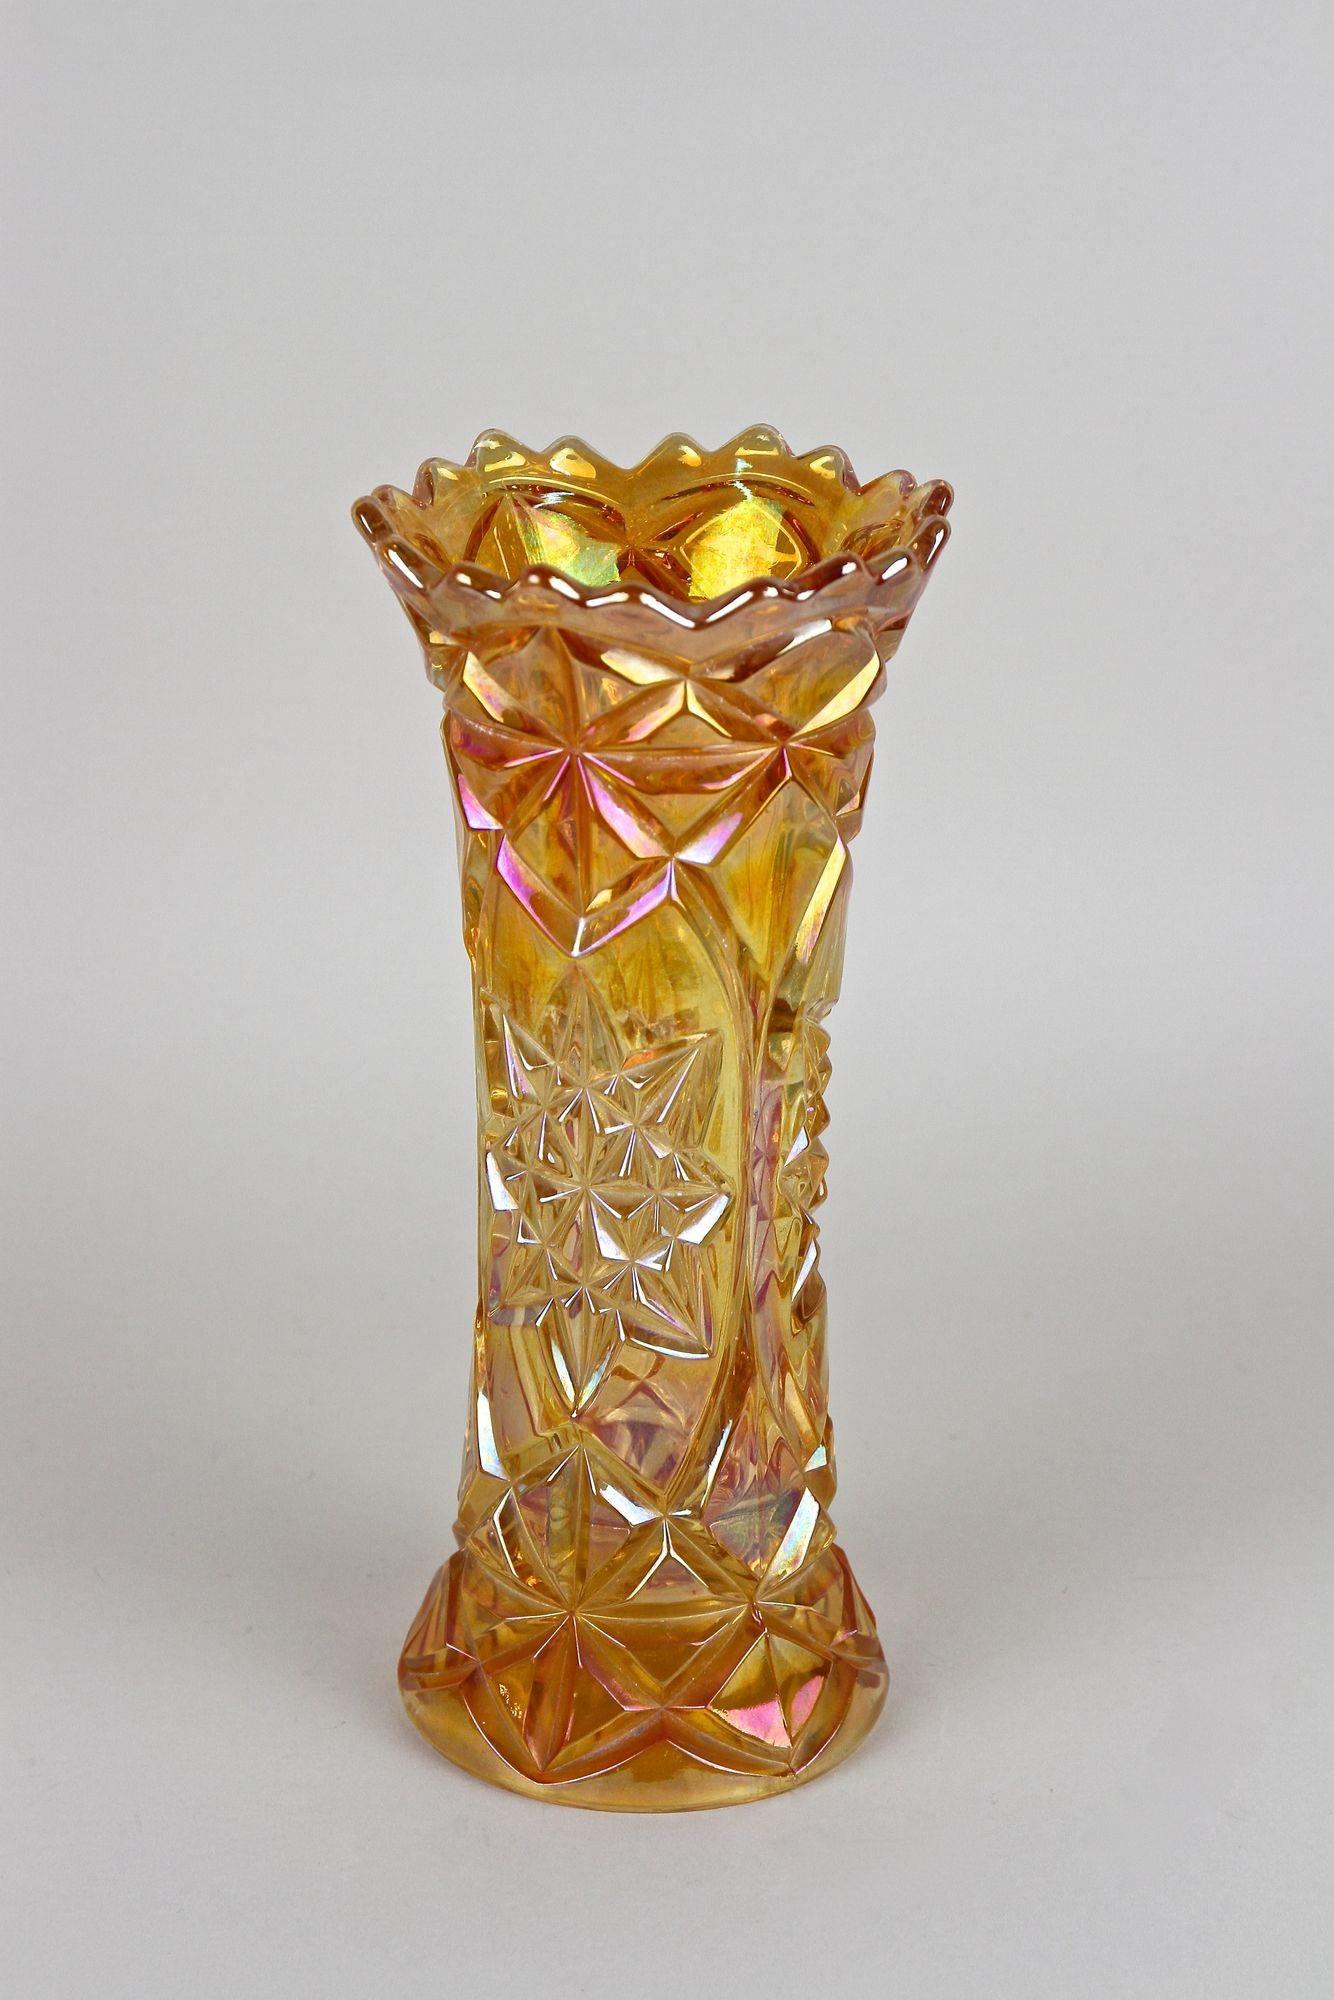 Extraordinaire vase en verre Art déco du début du 20e siècle vers 1930 en Bohemia (République tchèque). Un remarquable vase en verre de bohème au design accrocheur, réalisé en verre de couleur ambre. Son corps aux formes artistiques impressionne par